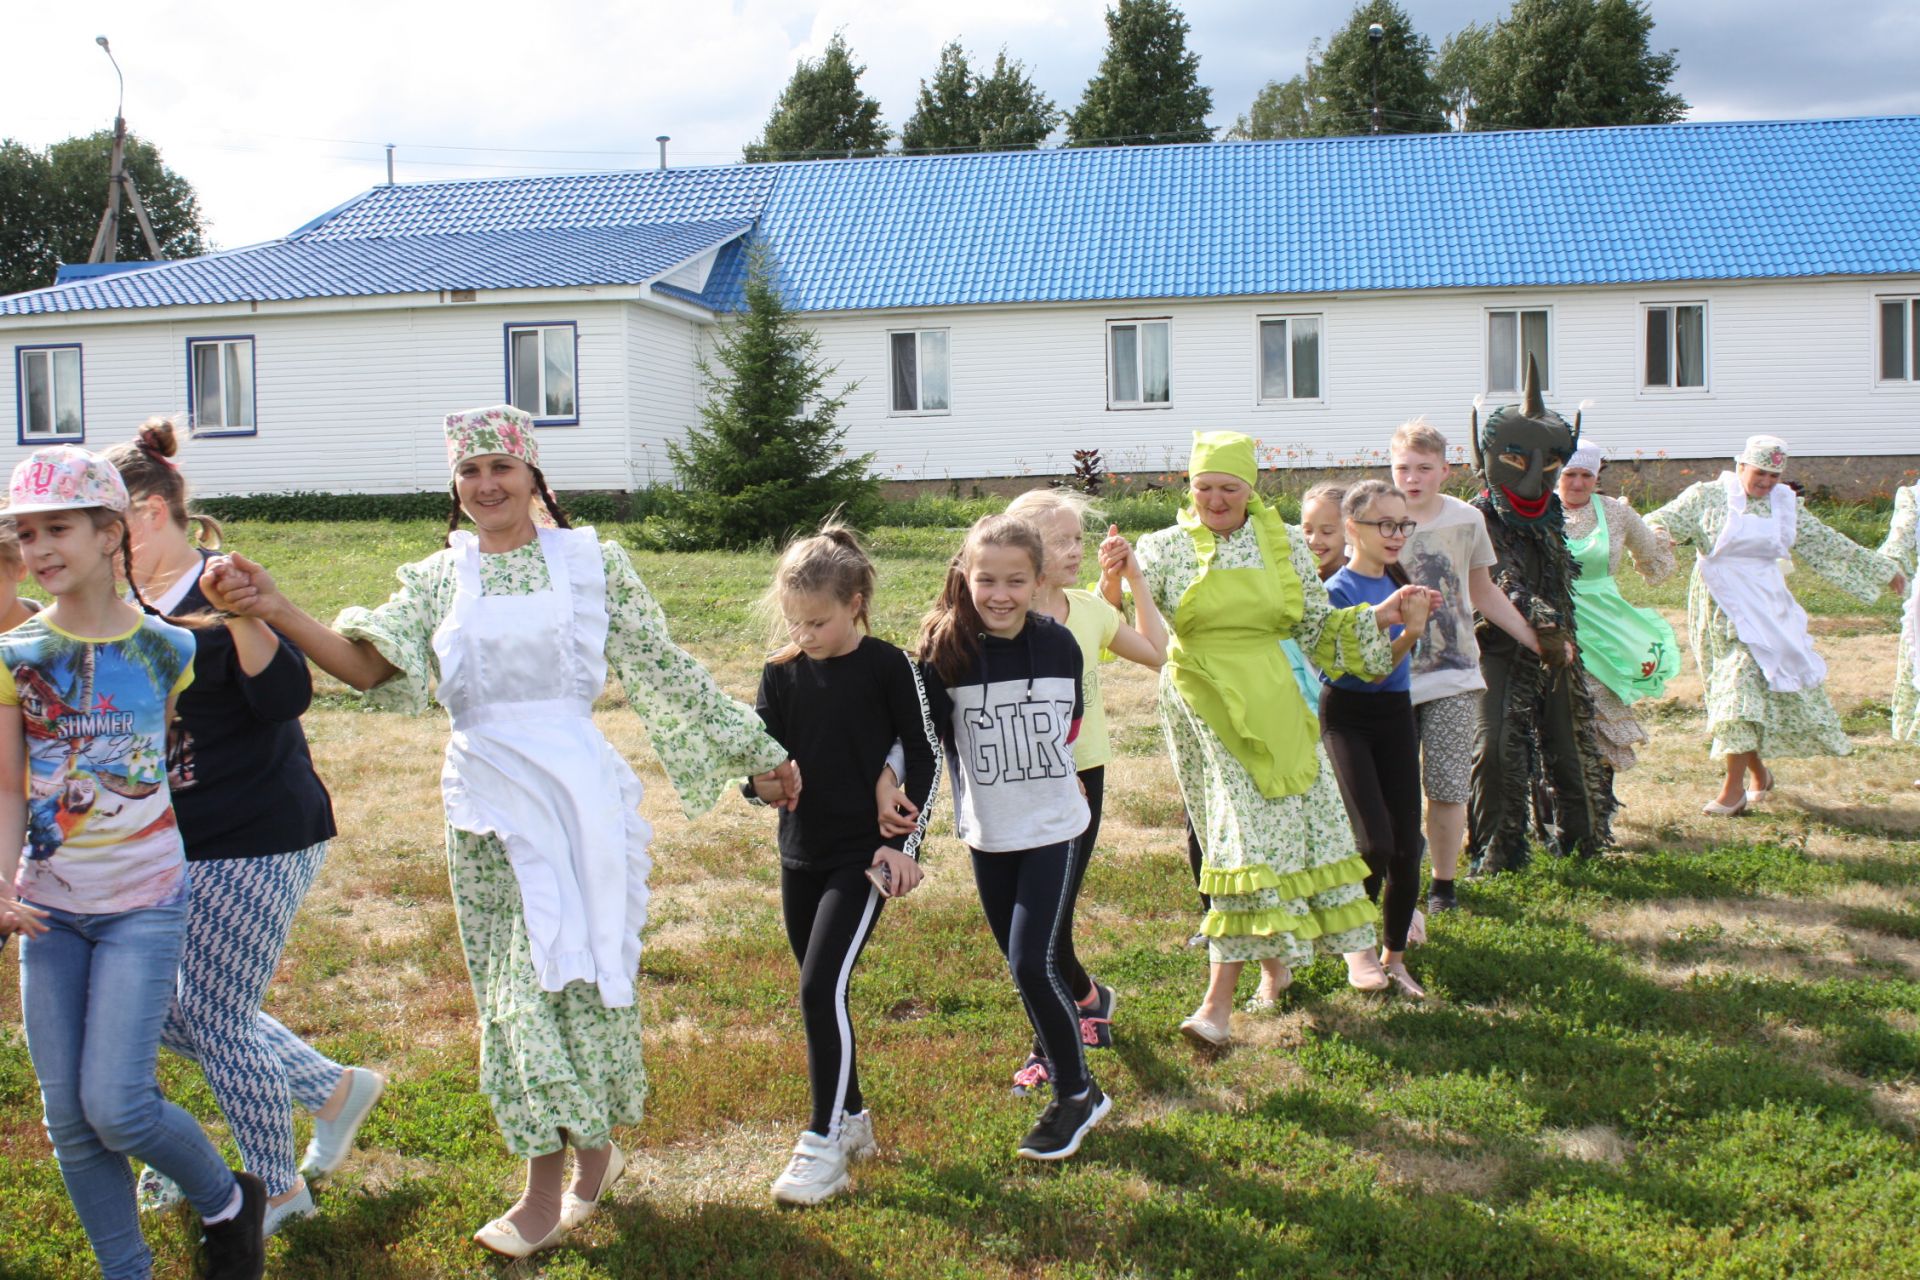 Сабантуй по-чистопольки: жители «Танцевальной деревни» побывали на народном празднике (ФОТОРЕПОРТАЖ)